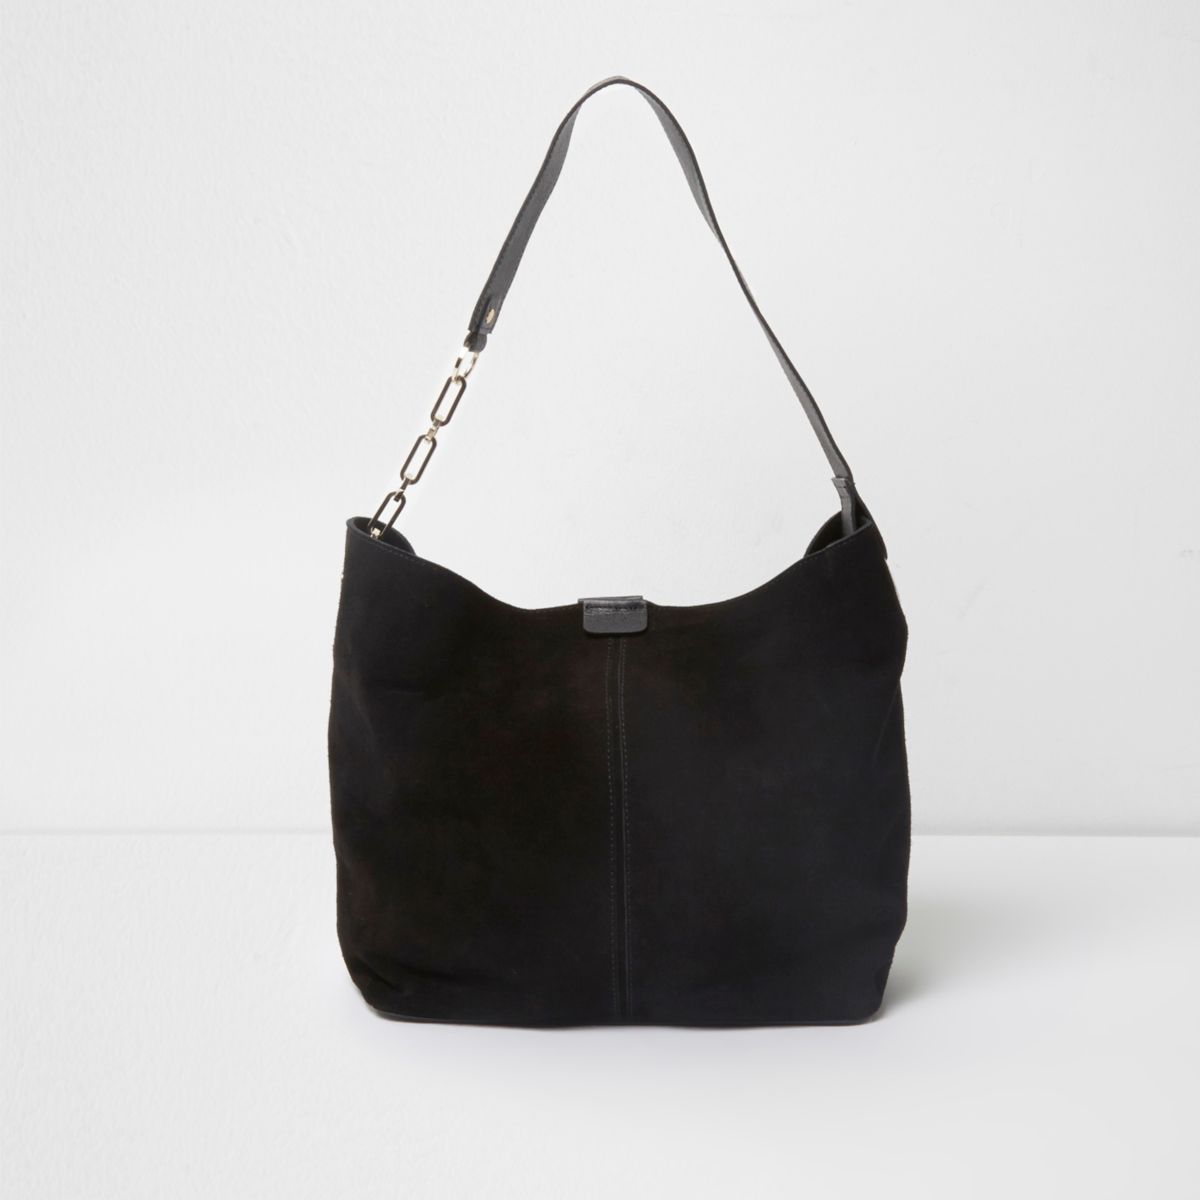 Black suede underarm slouch chain bag - Shoulder Bags - Bags & Purses - women